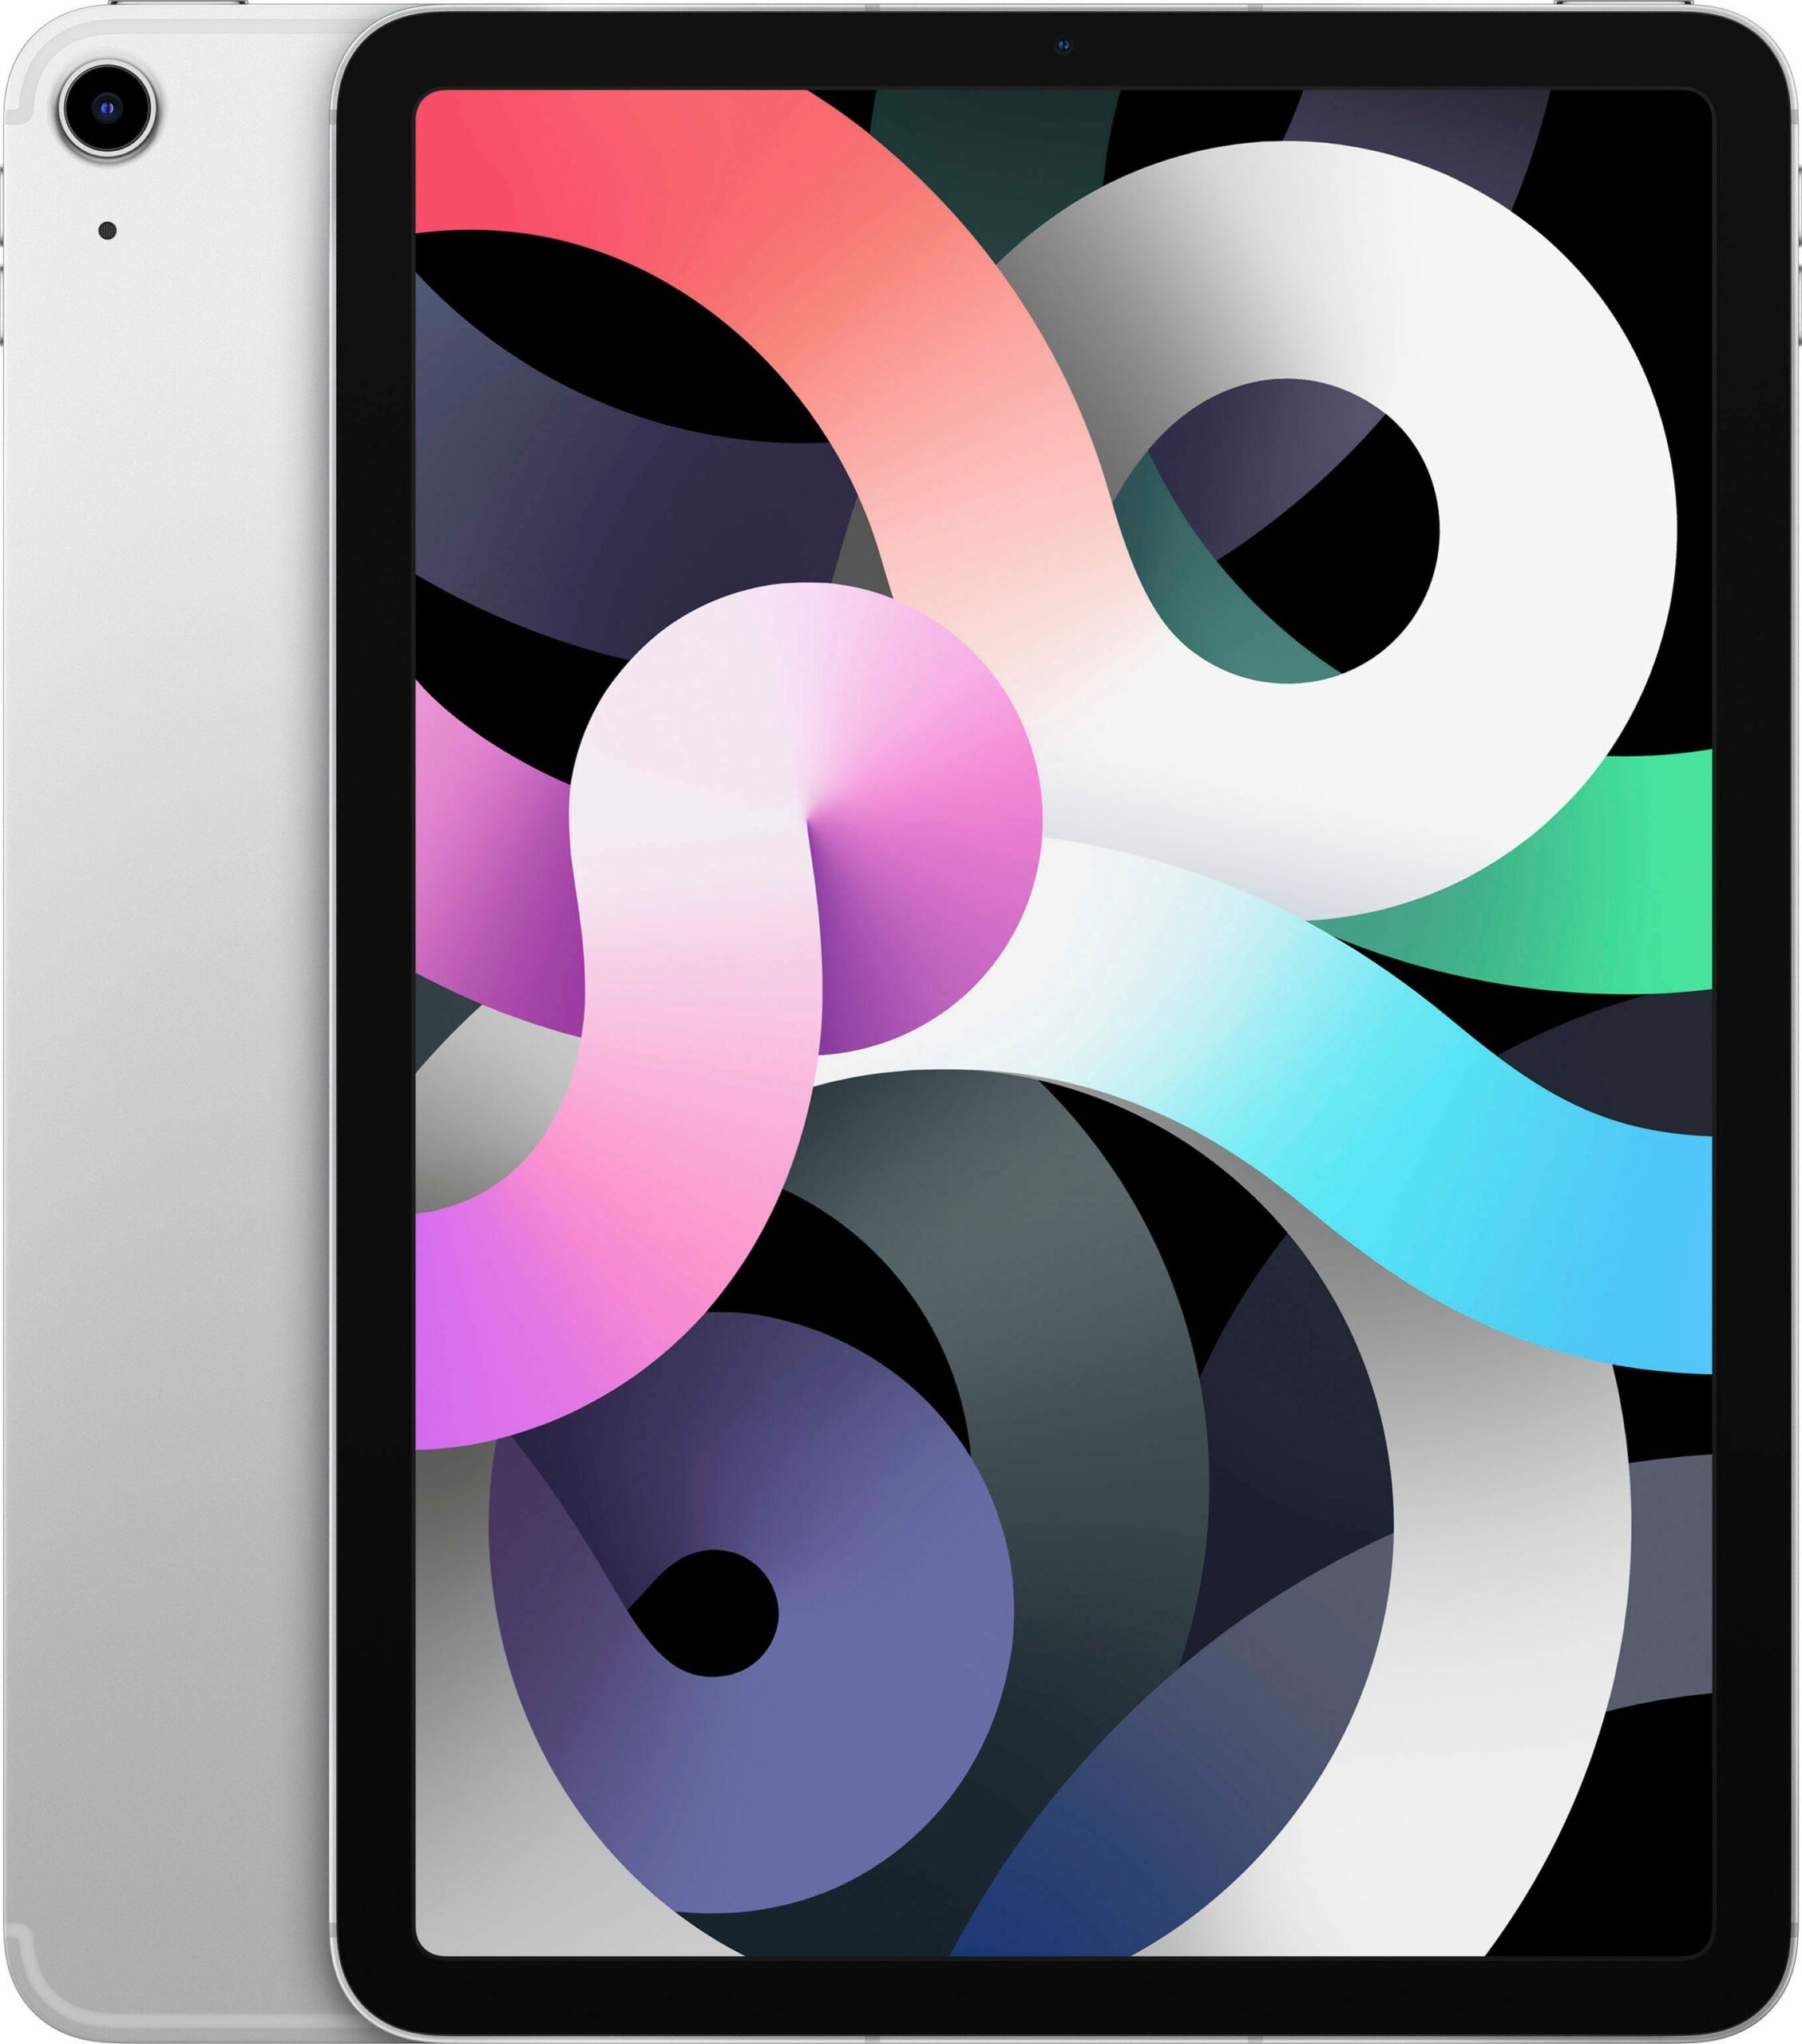 Apple iPad Air (2020) Wi-Fi + Cellular 256GB Tablet (10,9", 256 GB, iPadOS, 4G (LTE), inkl. Ladegerät)